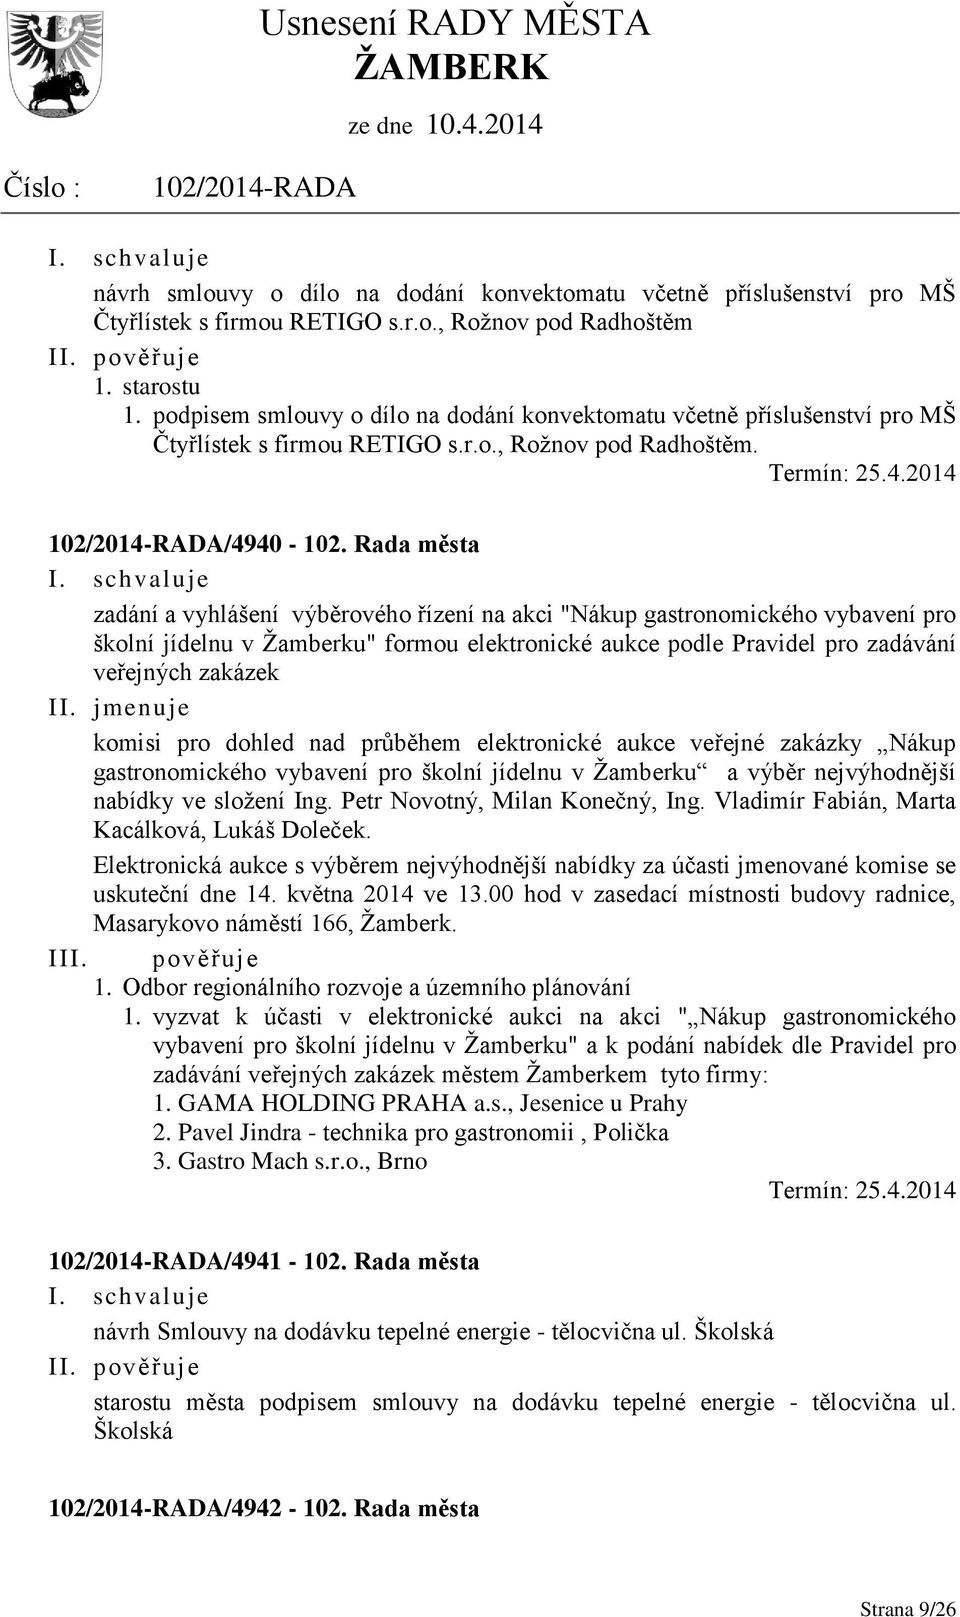 Rada města zadání a vyhlášení výběrového řízení na akci "Nákup gastronomického vybavení pro školní jídelnu v Žamberku" formou elektronické aukce podle Pravidel pro zadávání veřejných zakázek II.